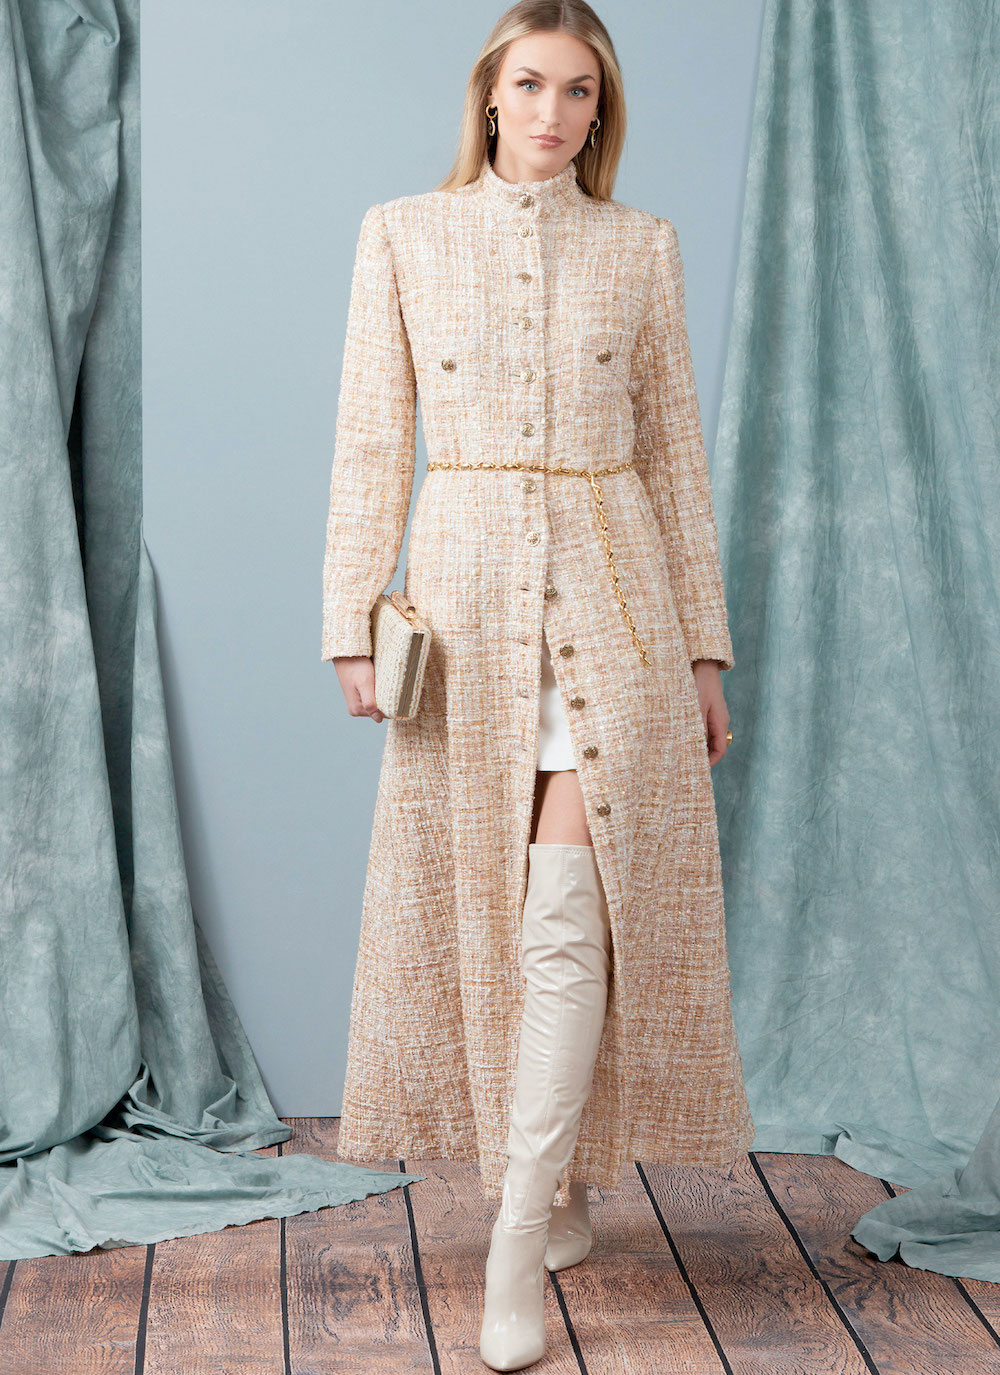 Vogue® Patterns Papierschnittmuster Damen Mantel in verschiedenen Längen V1926